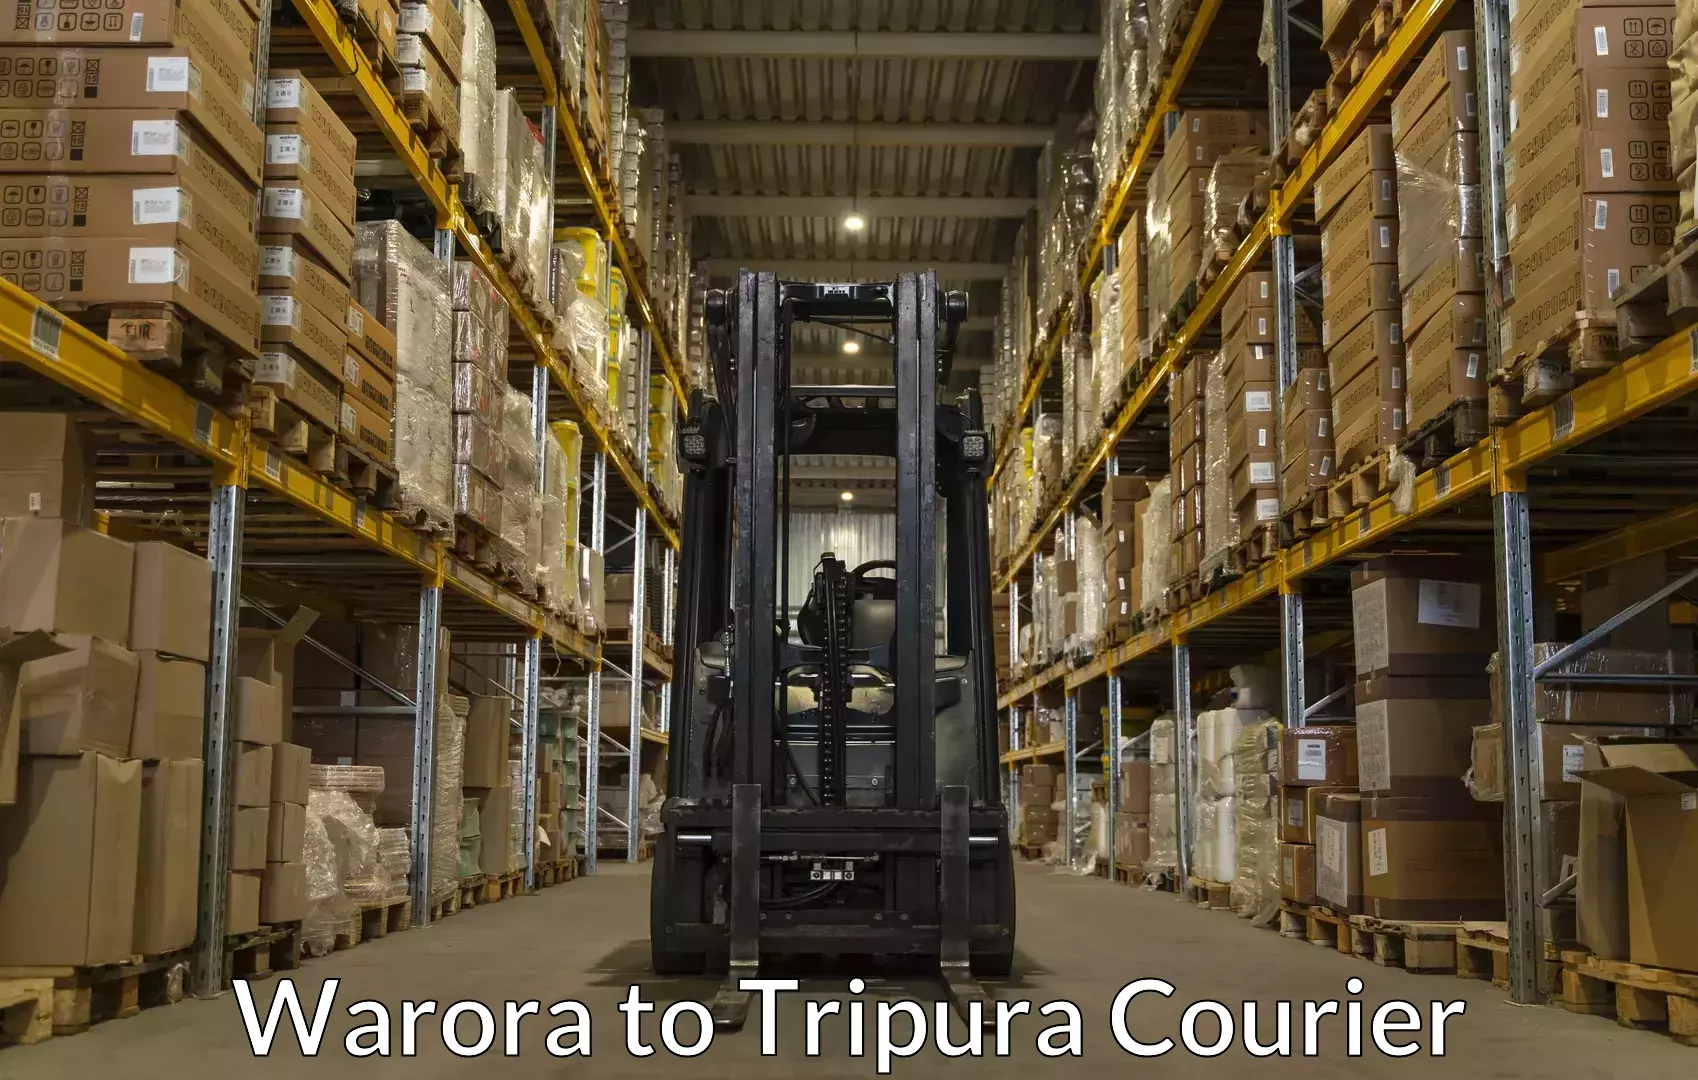 Baggage transport scheduler Warora to Tripura